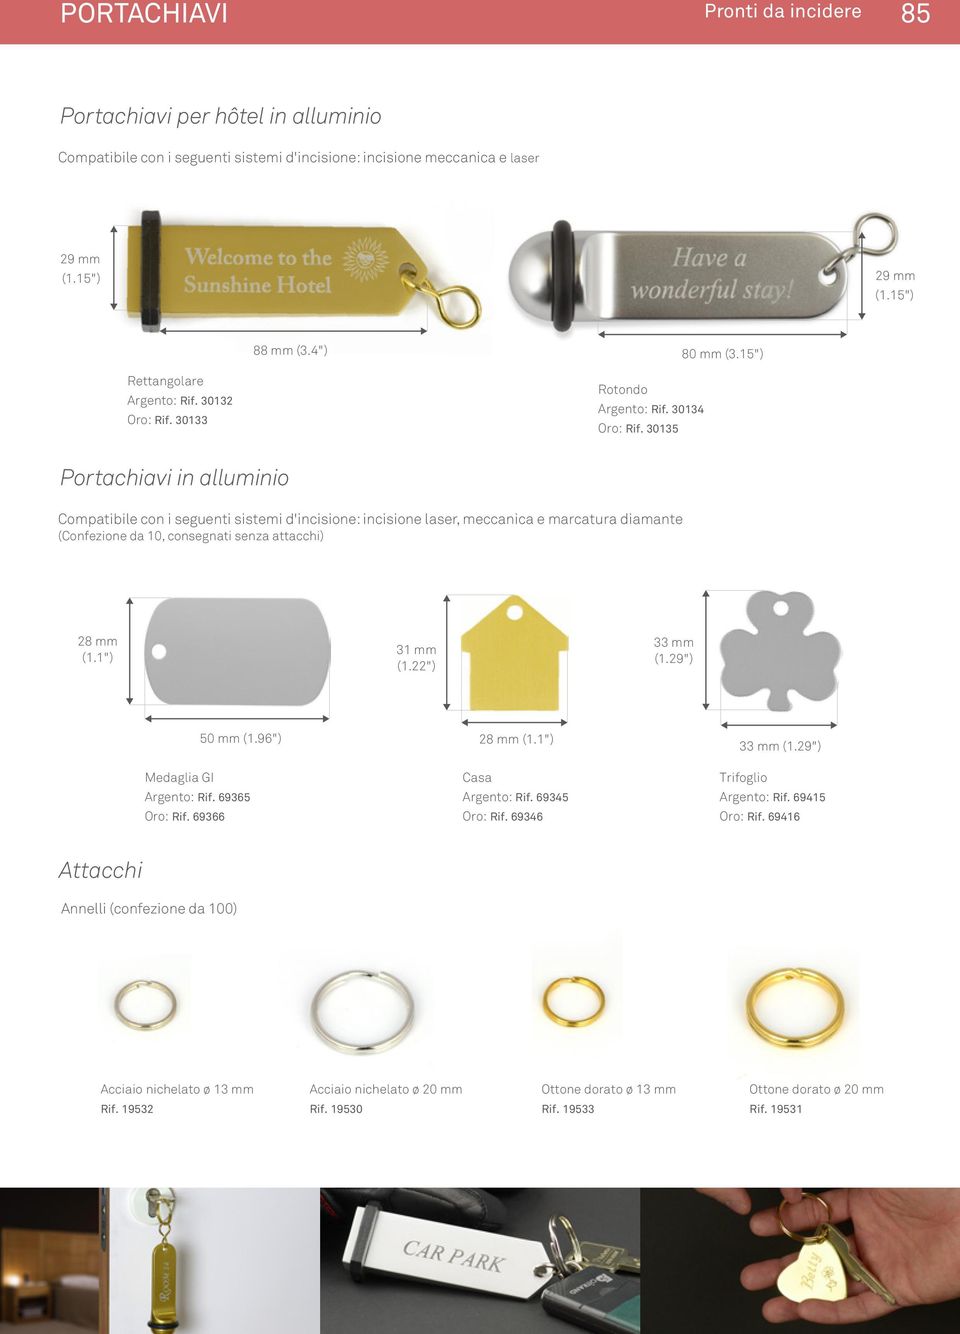 30135 Portachiavi in alluminio Compatibile con i seguenti sistemi d'incisione: incisione laser, meccanica e marcatura diamante (Confezione da 10, consegnati senza attacchi) 28 mm (1.1") 31 mm (1.